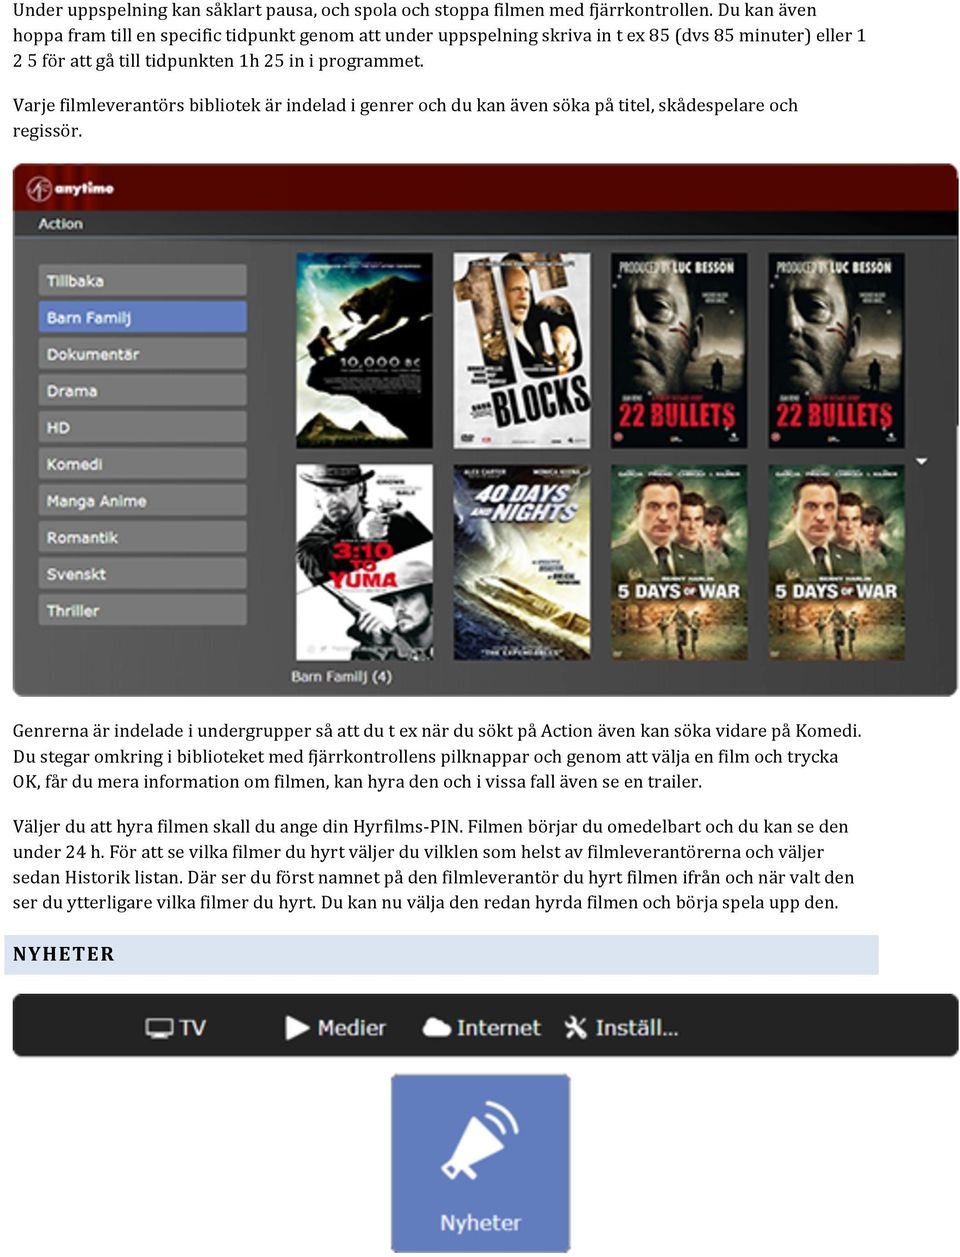 Varje filmleverantörs bibliotek är indelad i genrer och du kan även söka på titel, skådespelare och regissör.